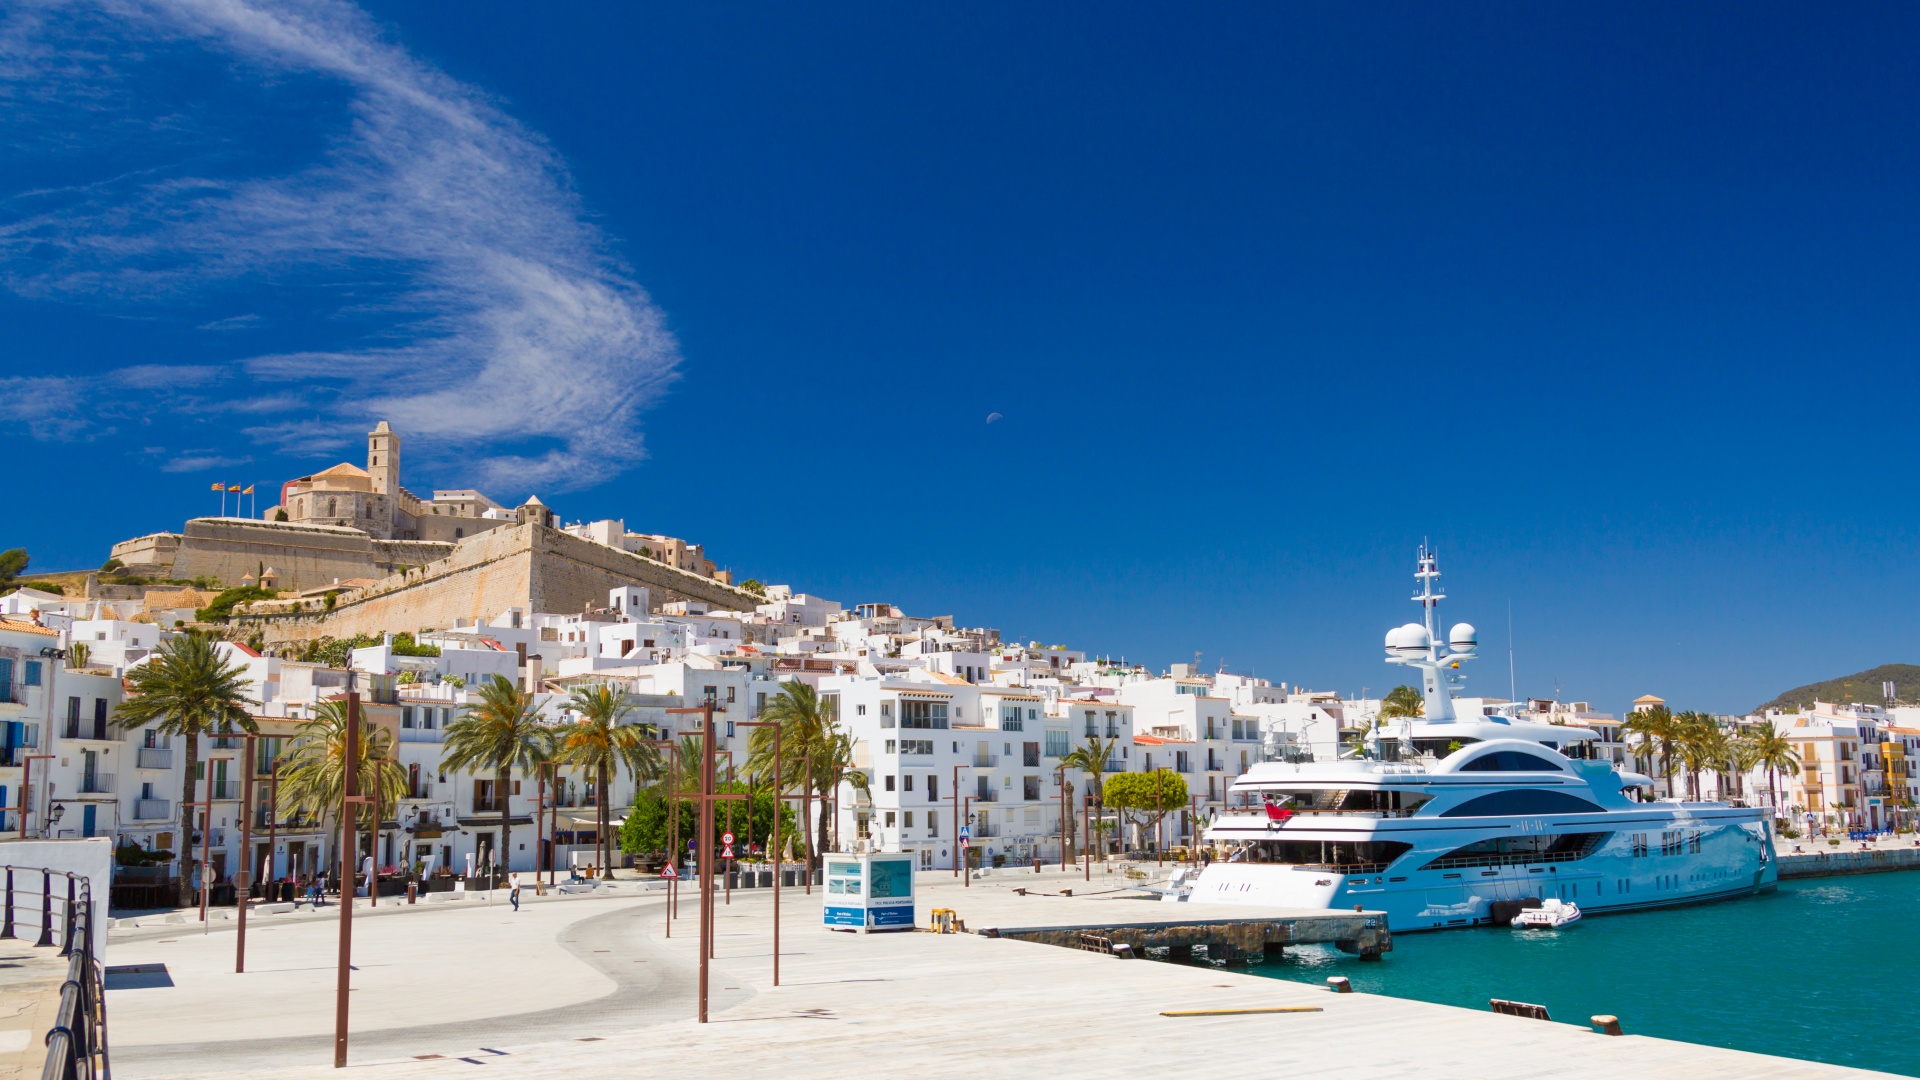 Holidays In Ibiza. Travel Tips